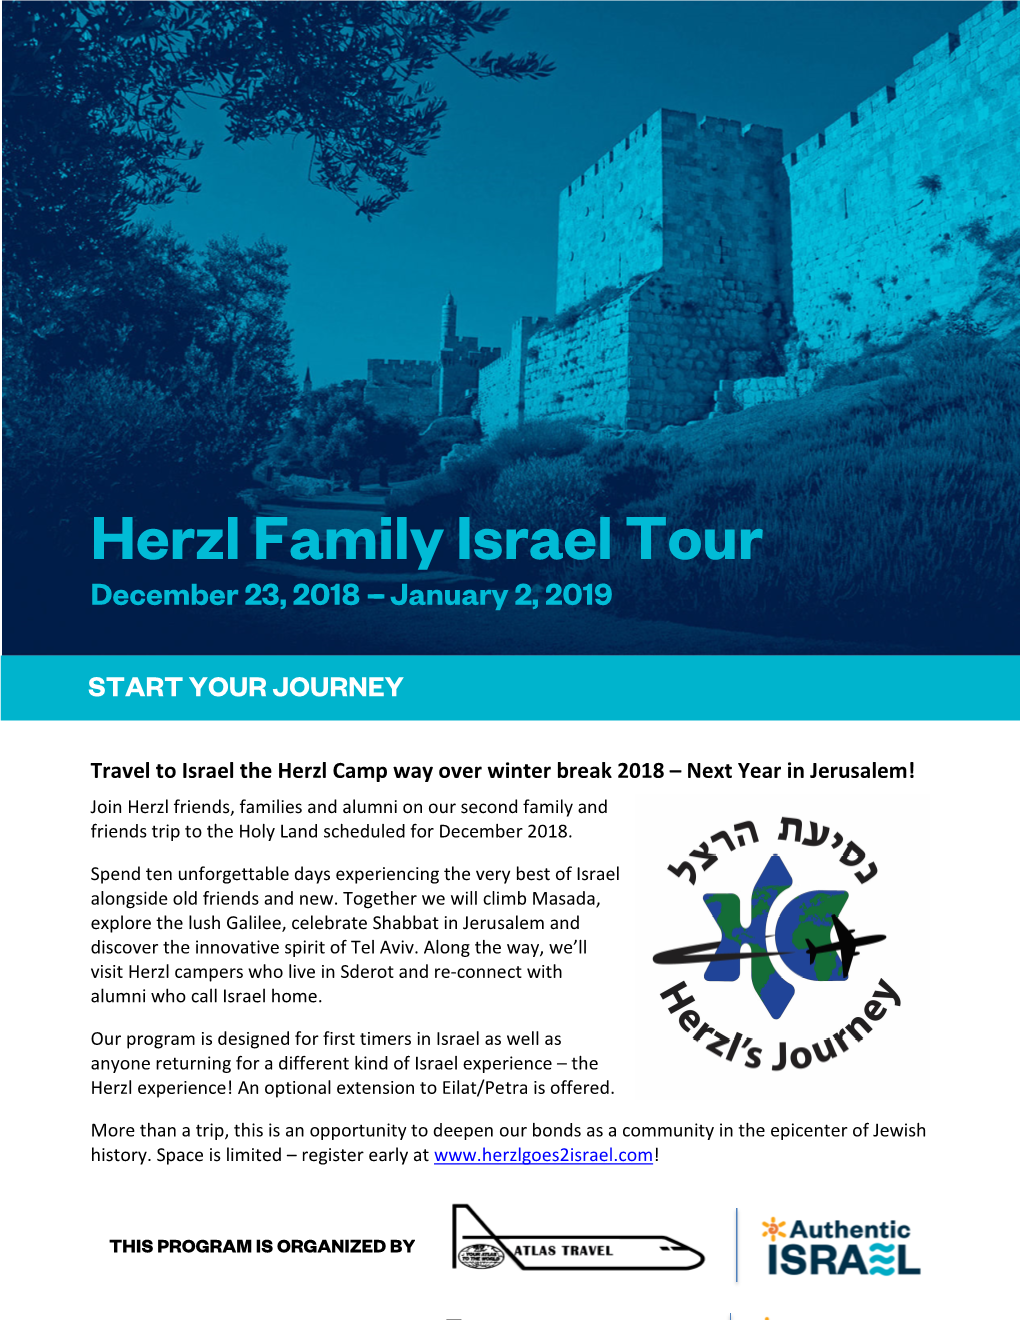 Herzl Family Israel Tour December 23, 2018 --- January 2, 2019